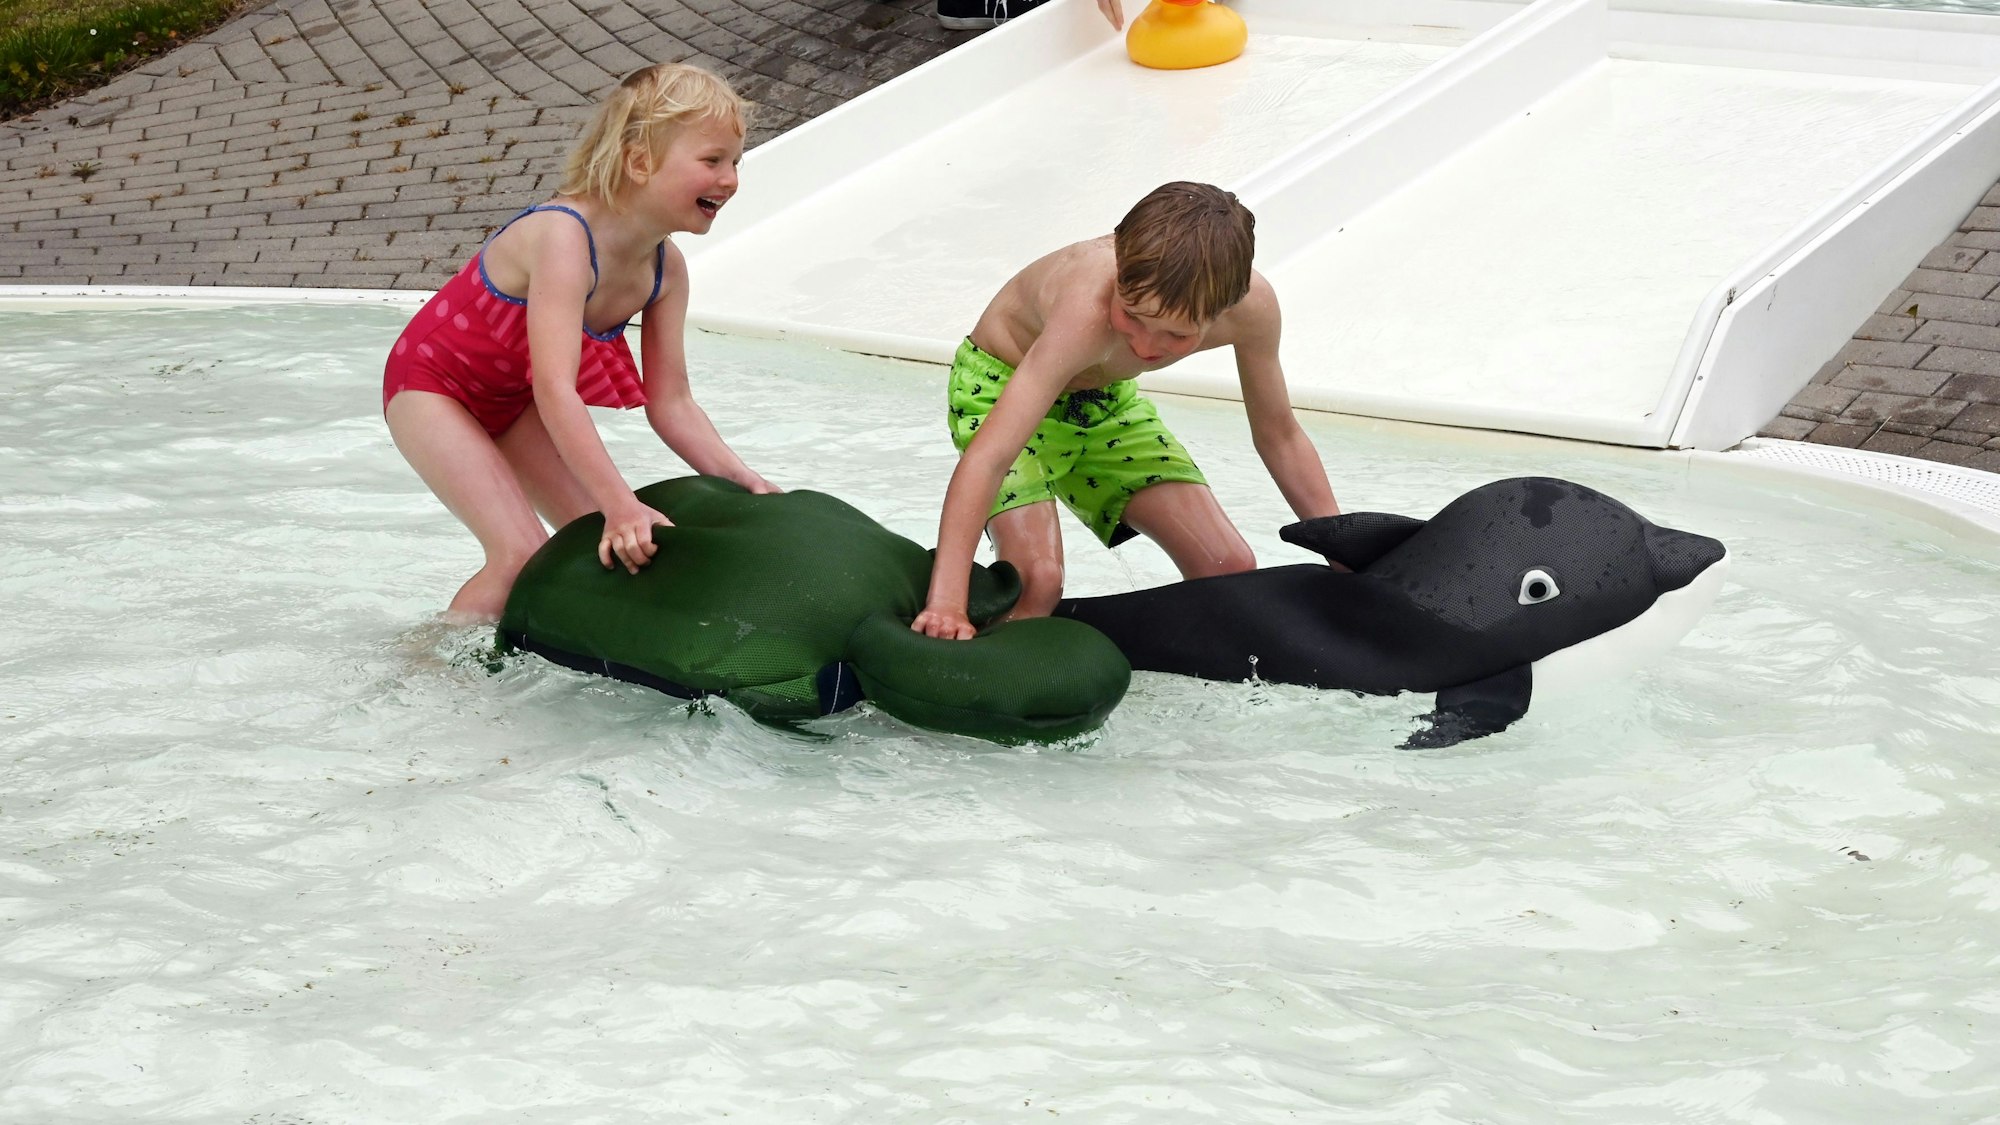 Im Bild sind ein Junge und seine kleine Schwester, die in einem Schwimmbecken für Kinder mit zwei aufblasbaren Tieren spielen.